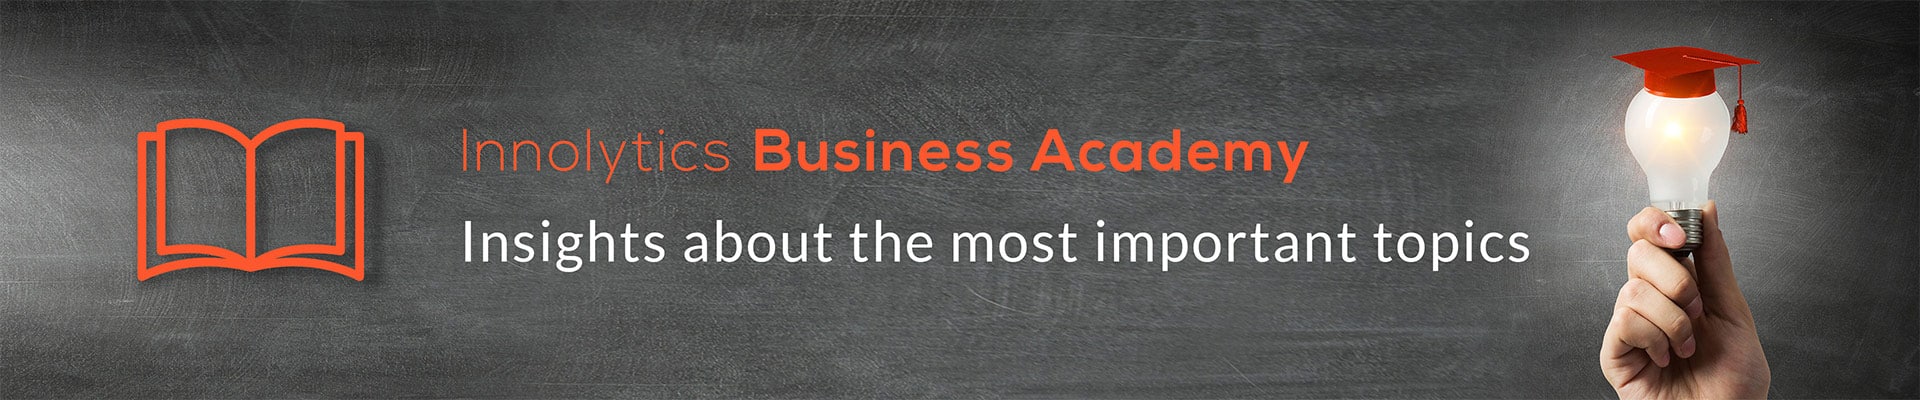 Innolytics-Innovation Business Academy